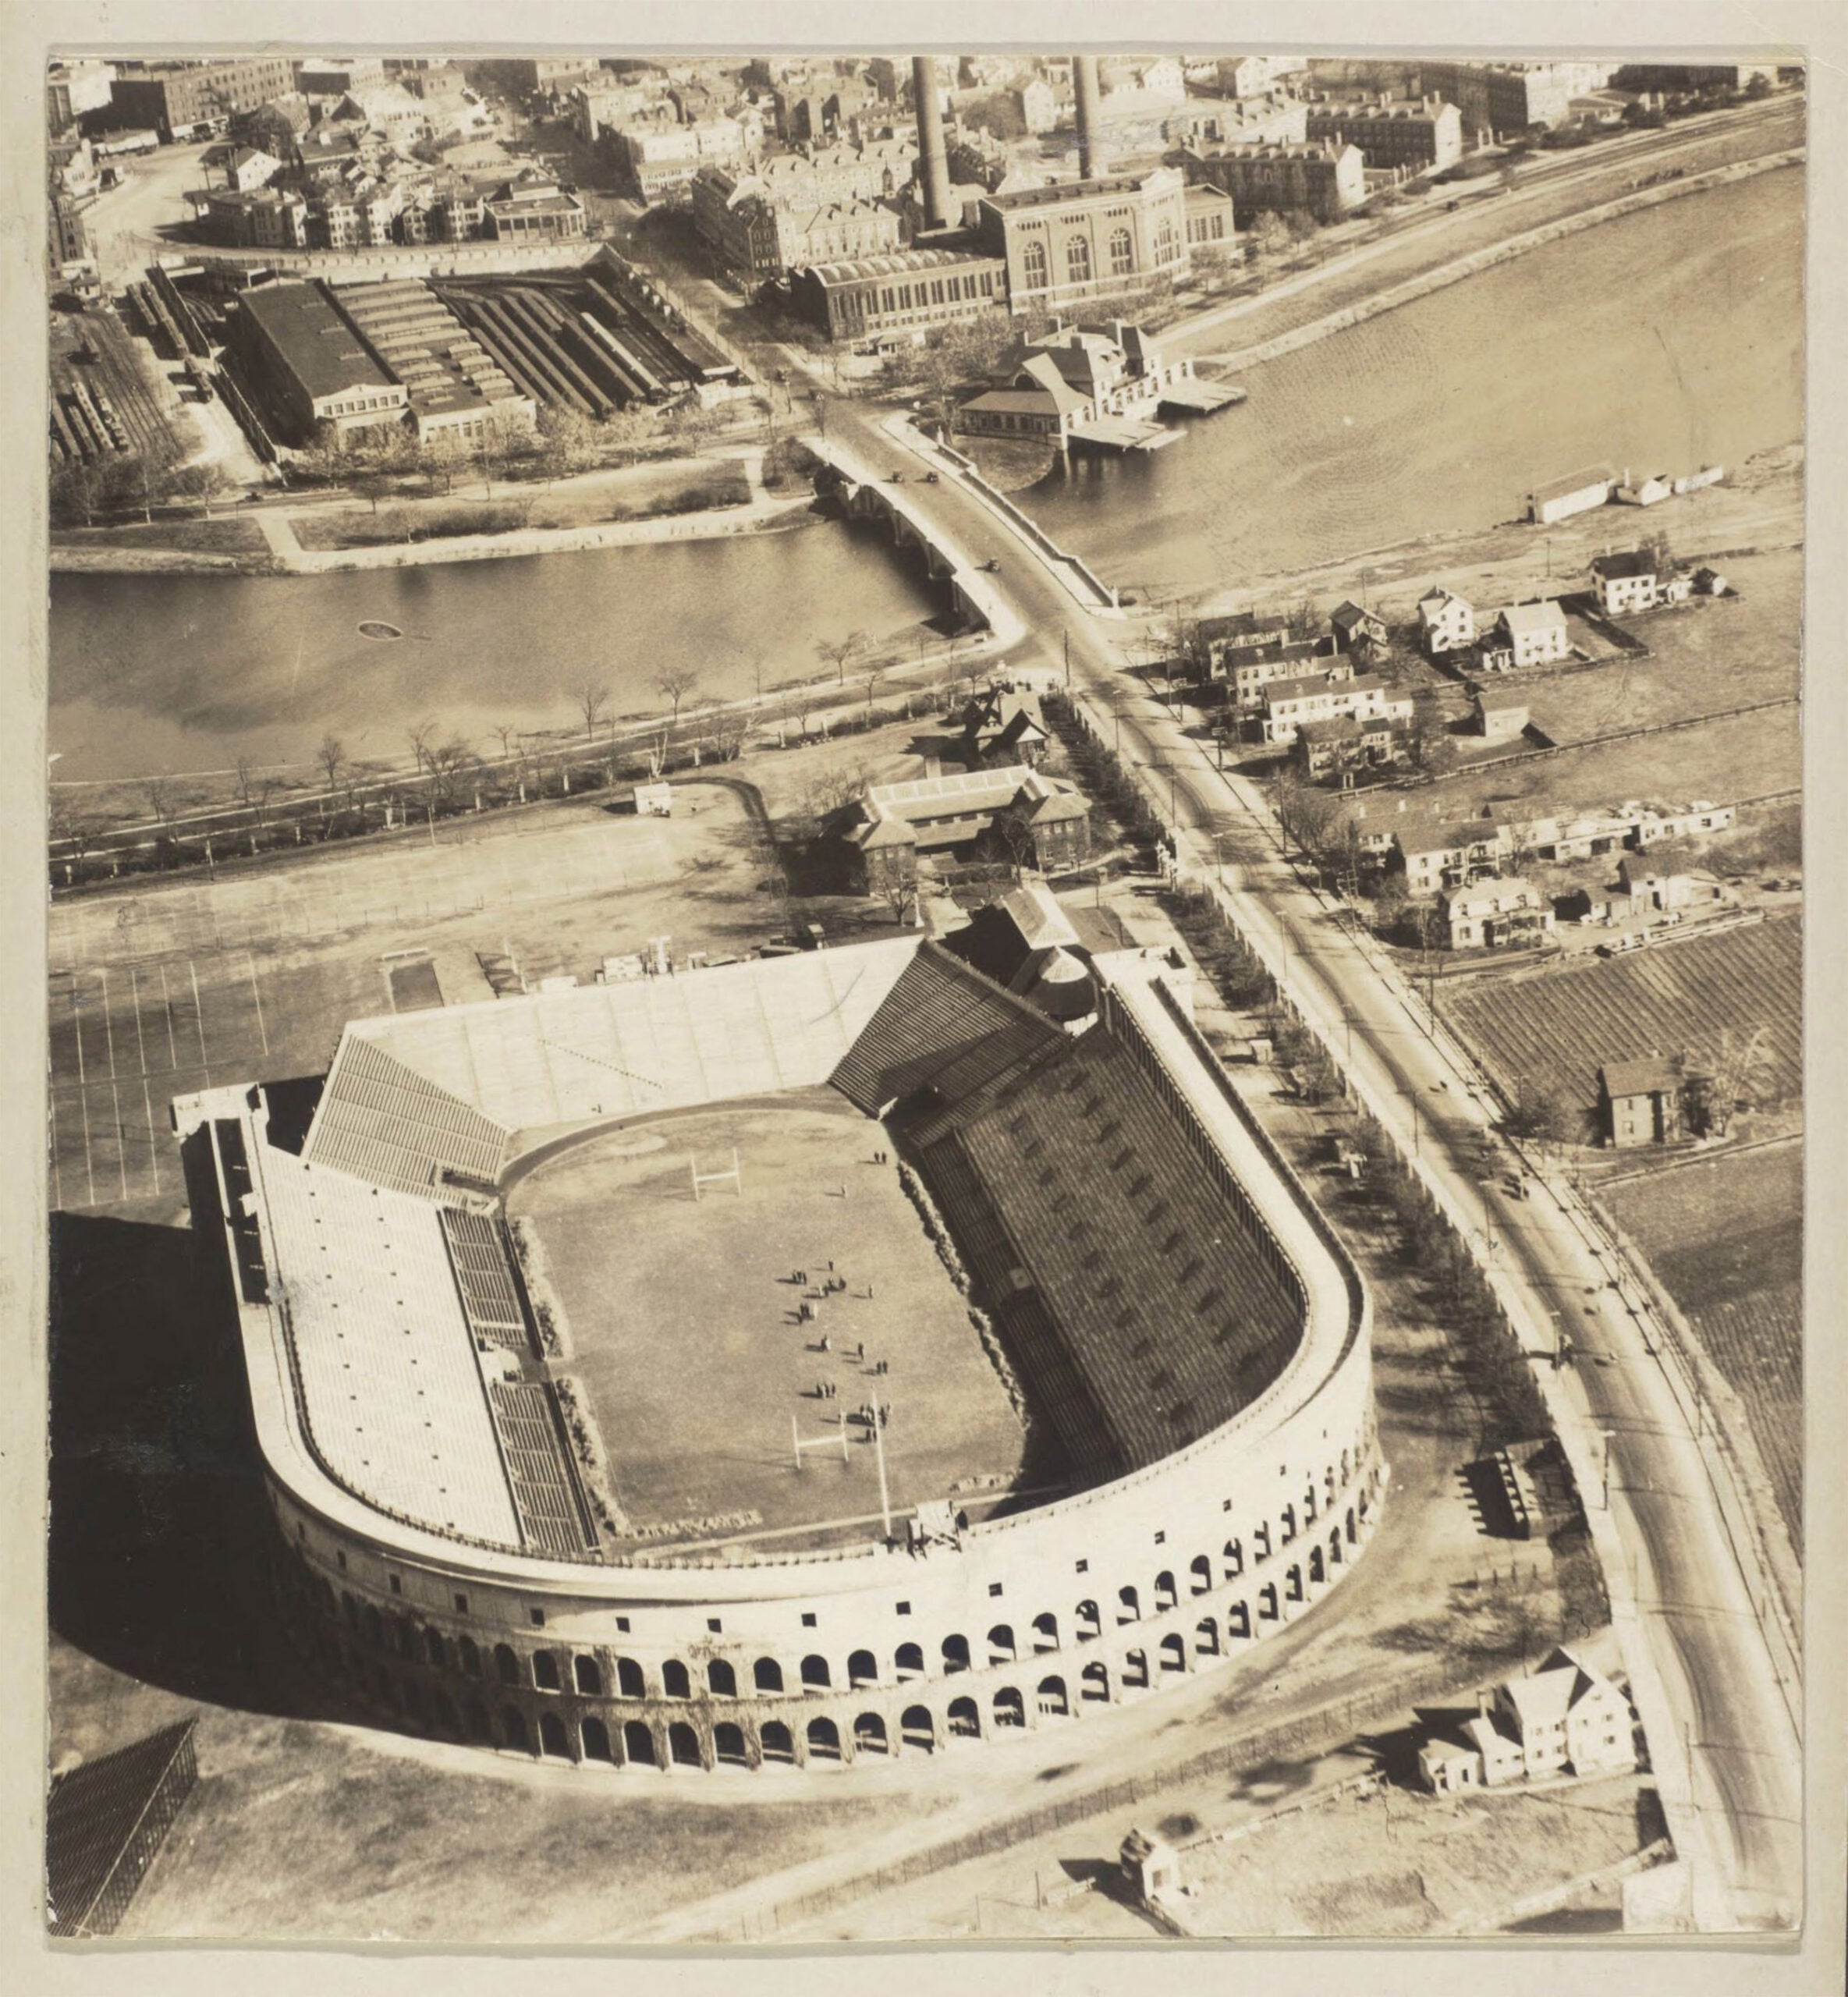 erial view of Harvard Stadium circa 1915.